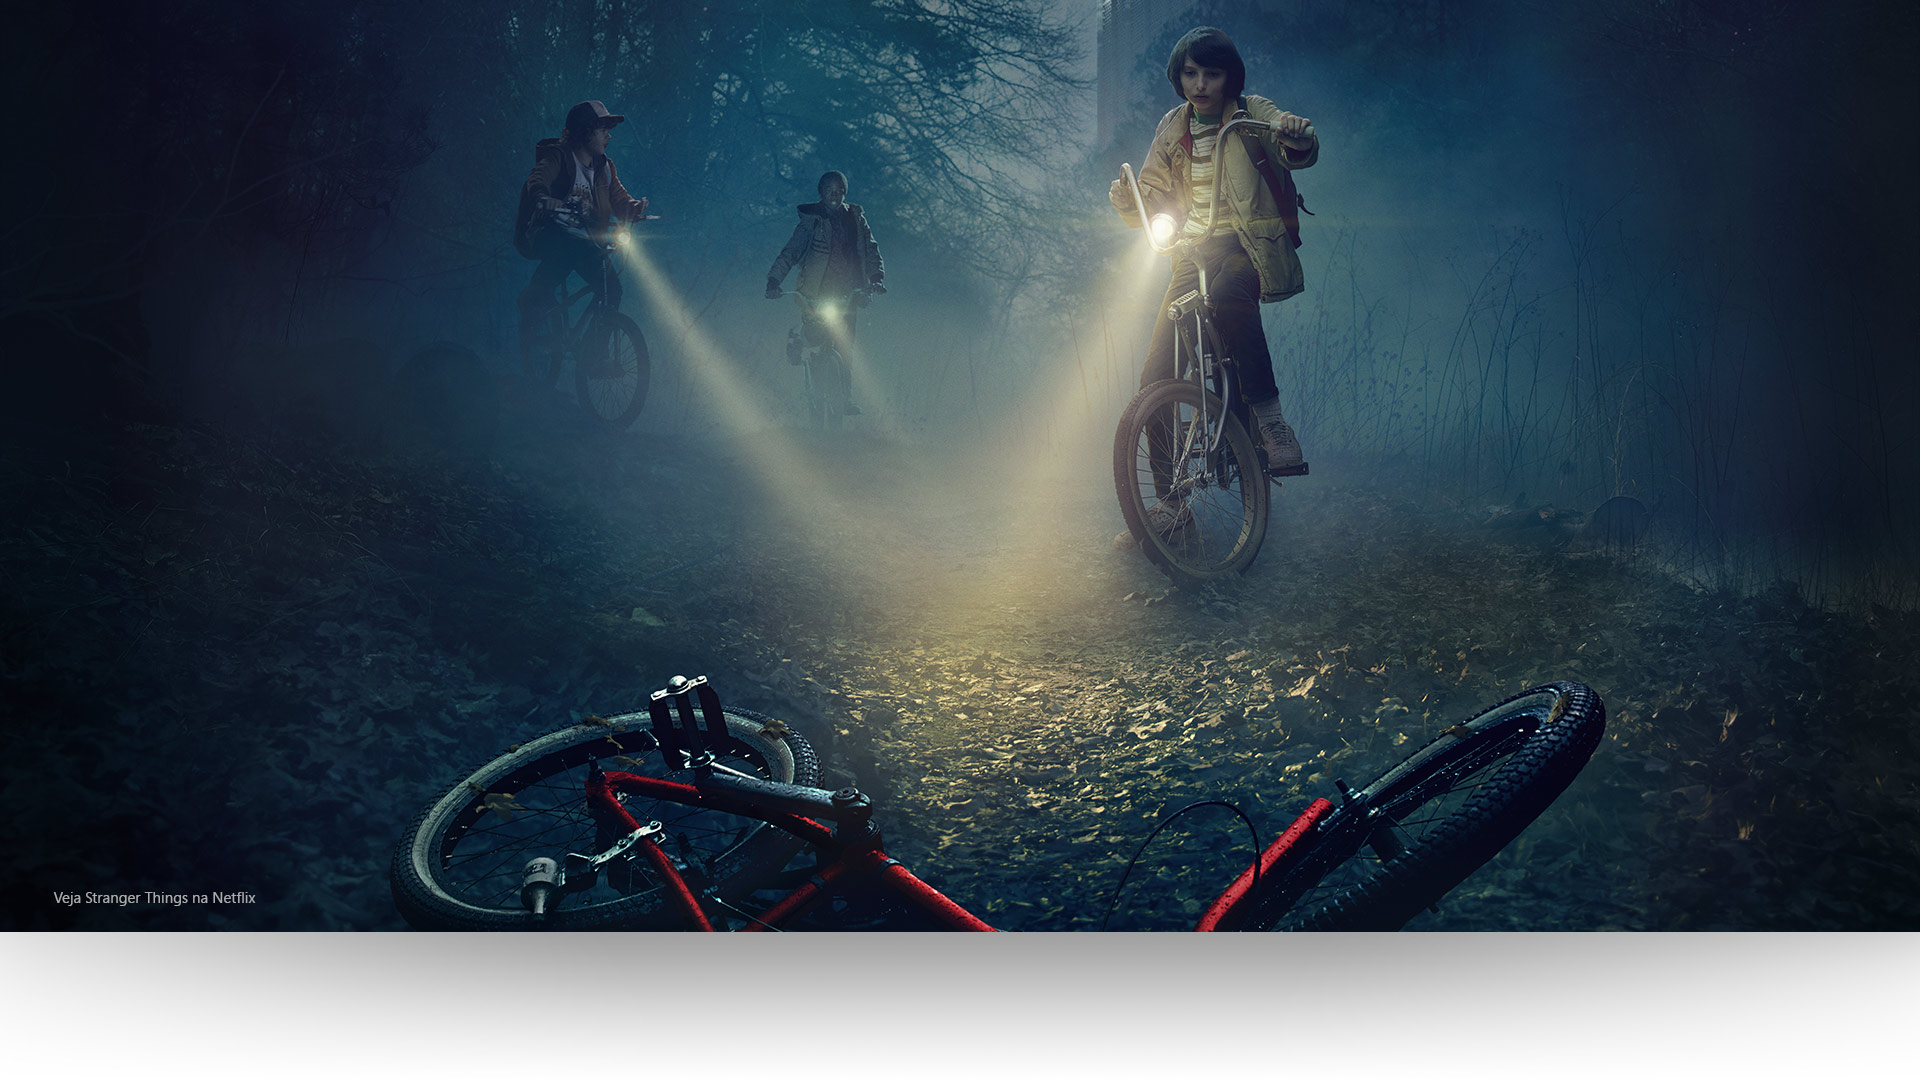 Stranger Things – Dustin, Lucas e Mike acendem as suas luzes numa bicicleta abandonada num caminho florestal sombrio. Vê o Stranger Things na Netflix.